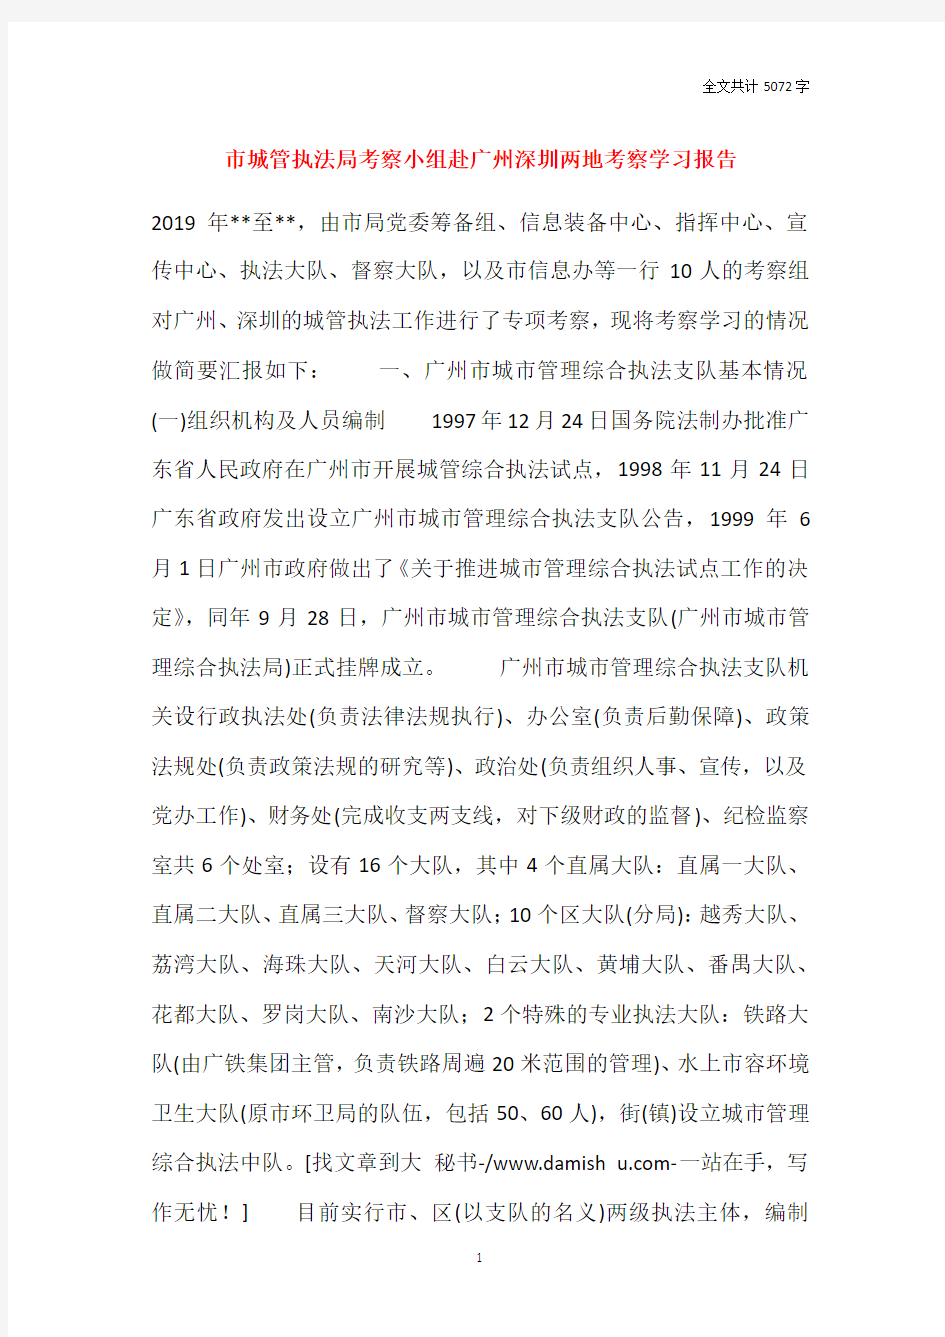 市城管执法局考察小组赴广州深圳两地考察学习报告